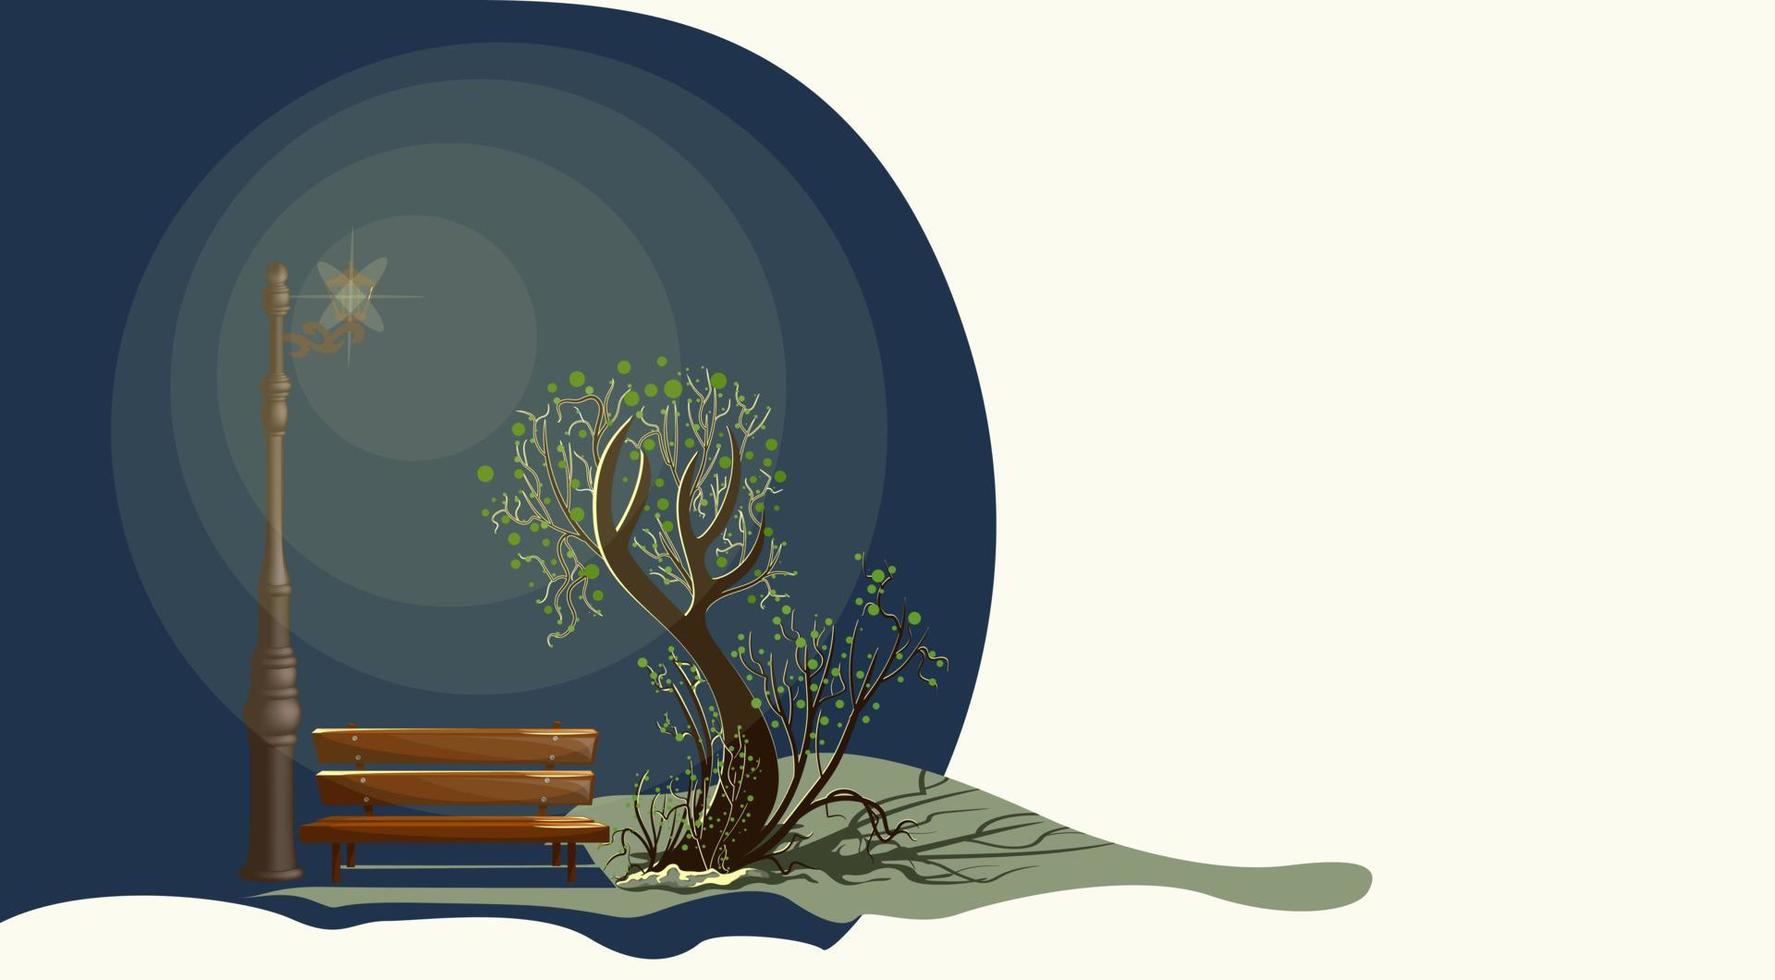 imagen vectorial de un solo árbol bajo la iluminación de una linterna en otoño y verano por la noche. parada ecológica para un transeúnte con una estilización de banco. eps 10 vector